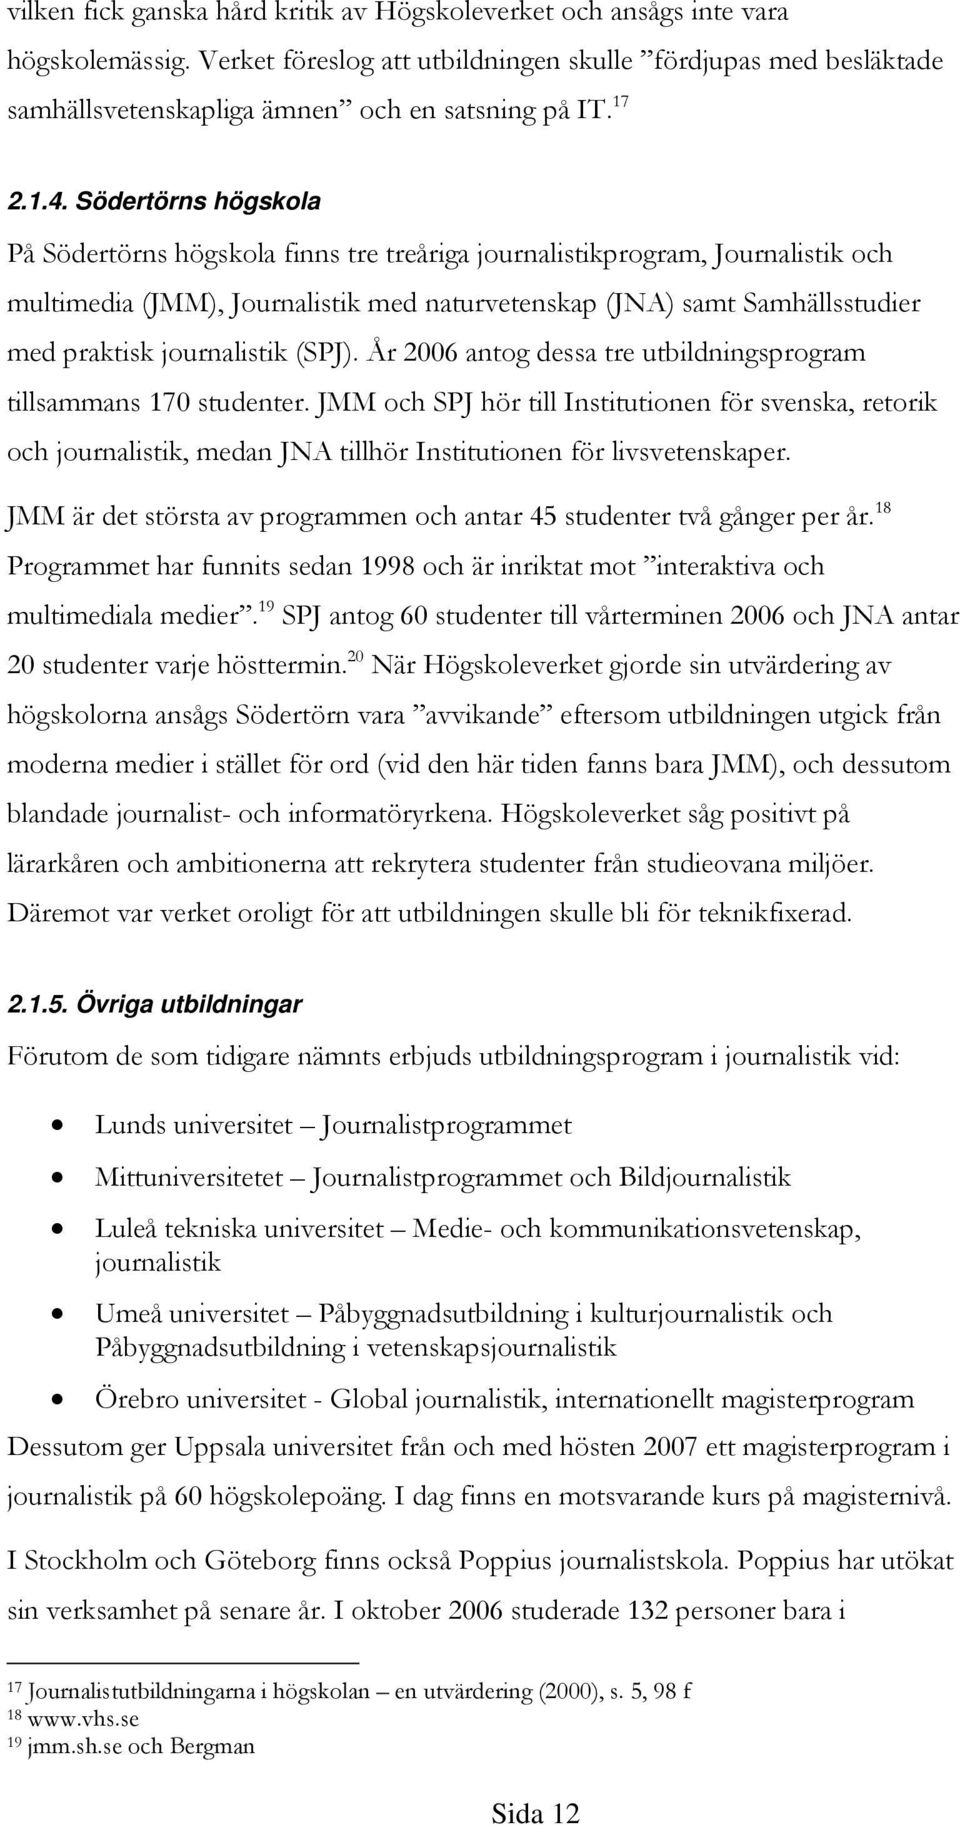 Södertörns högskola På Södertörns högskola finns tre treåriga journalistikprogram, Journalistik och multimedia (JMM), Journalistik med naturvetenskap (JNA) samt Samhällsstudier med praktisk